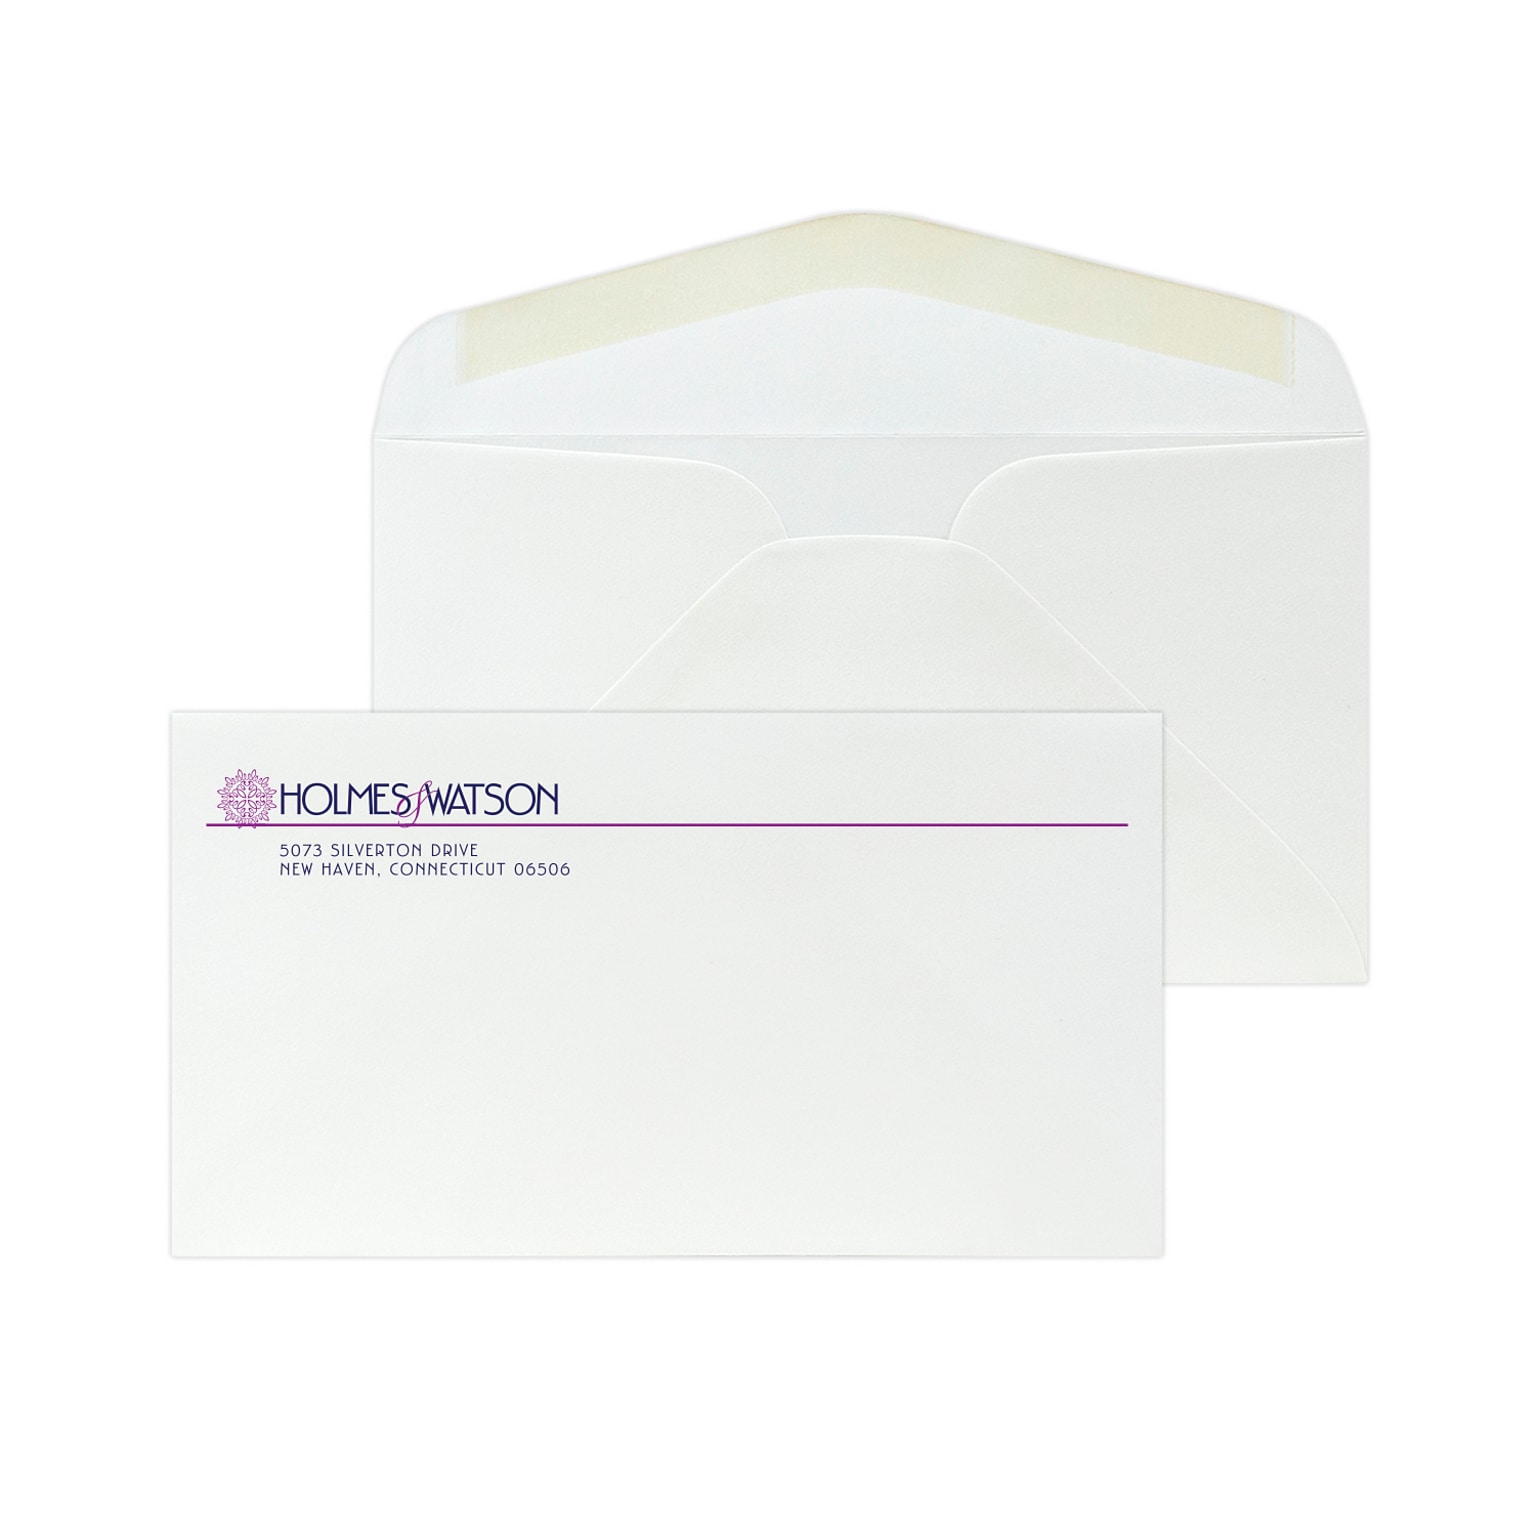 Custom #6-3/4 Standard Envelopes, 3 5/8 x 6 1/2, 24# White 25% Cotton Bond, 2 Custom Inks, 250 / Pack